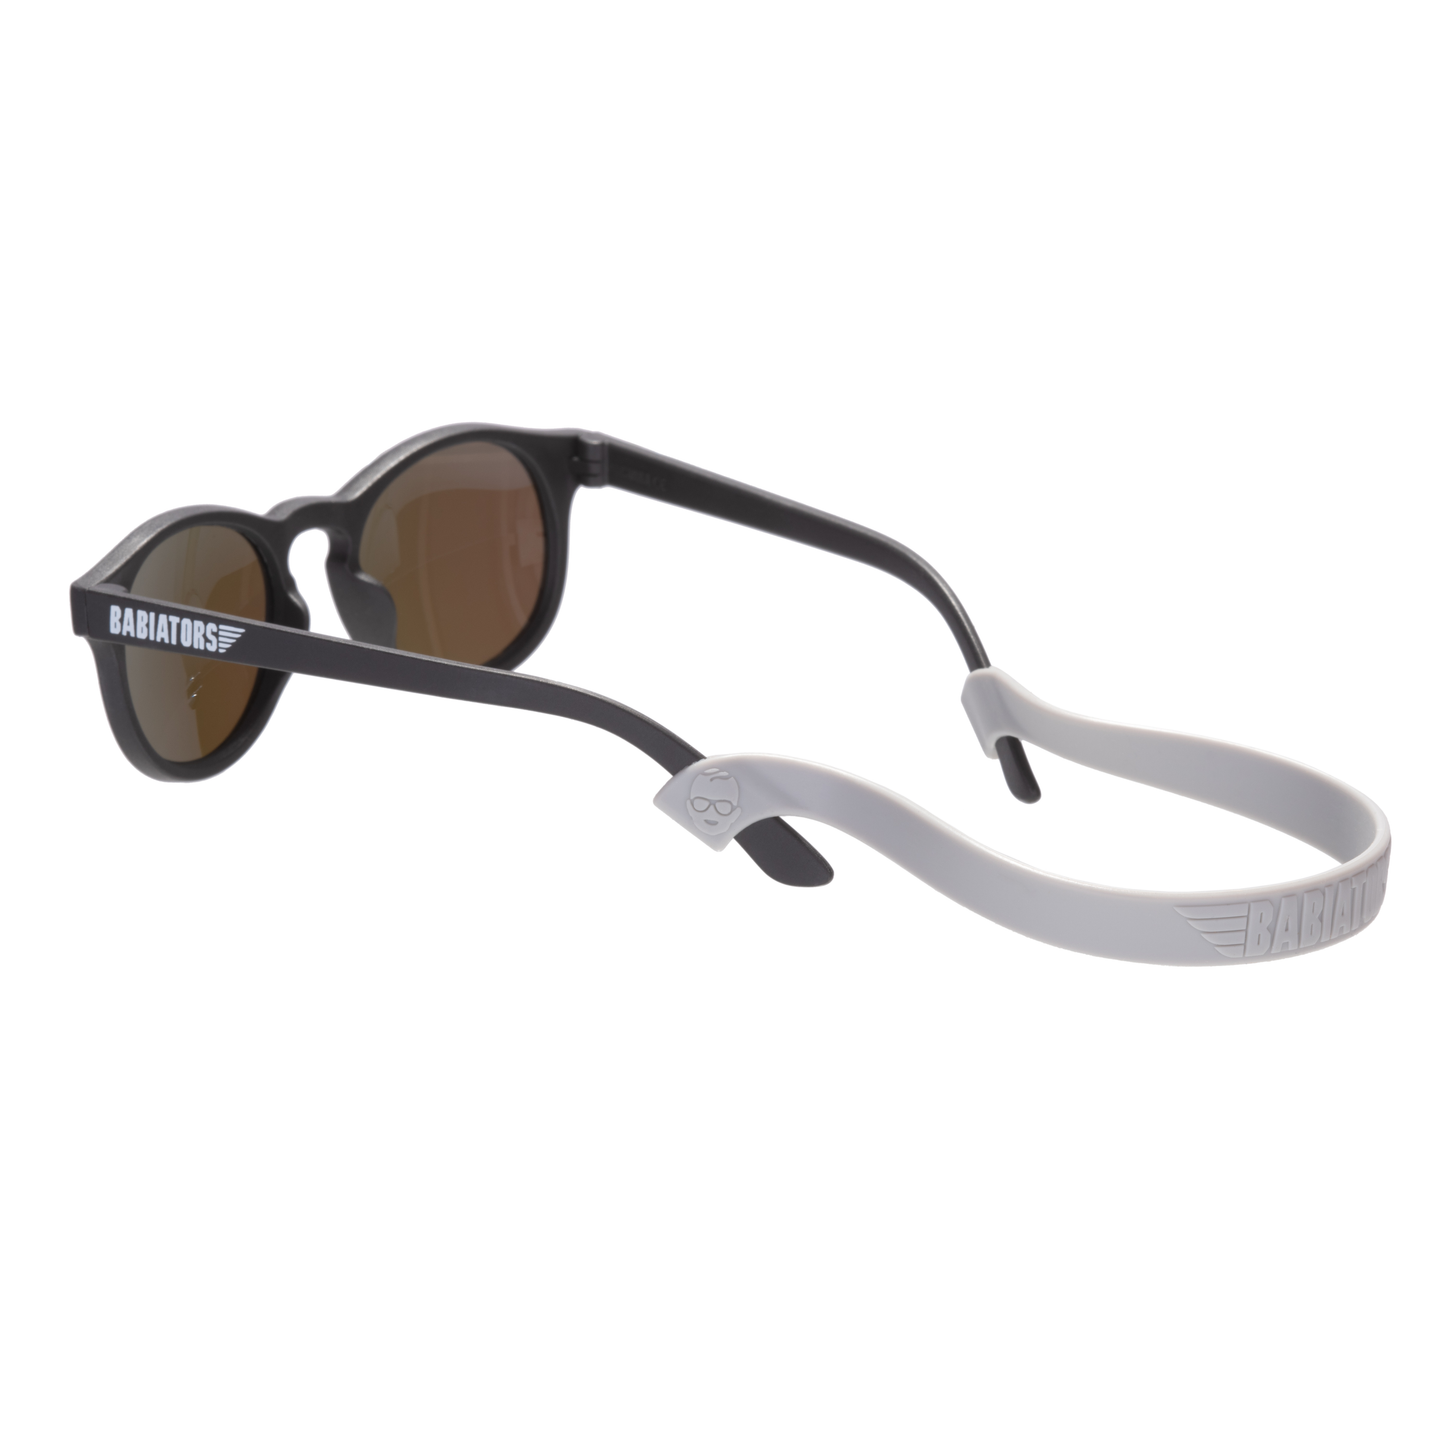 Silicone Strap for Sunglasses